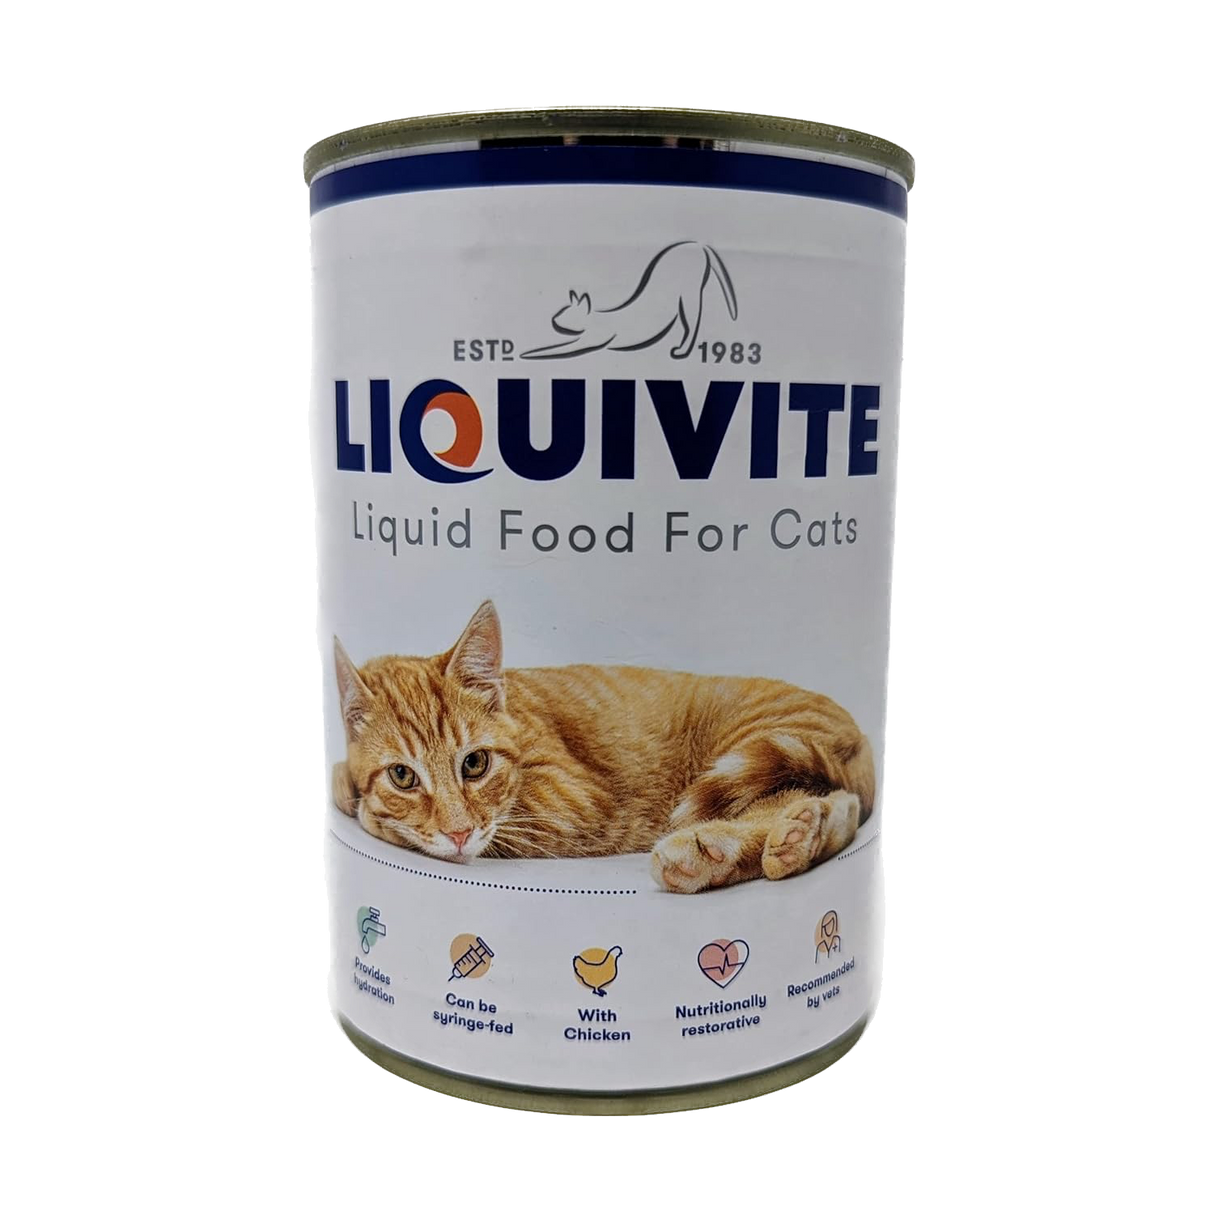 Liquivite Wet Cat Food